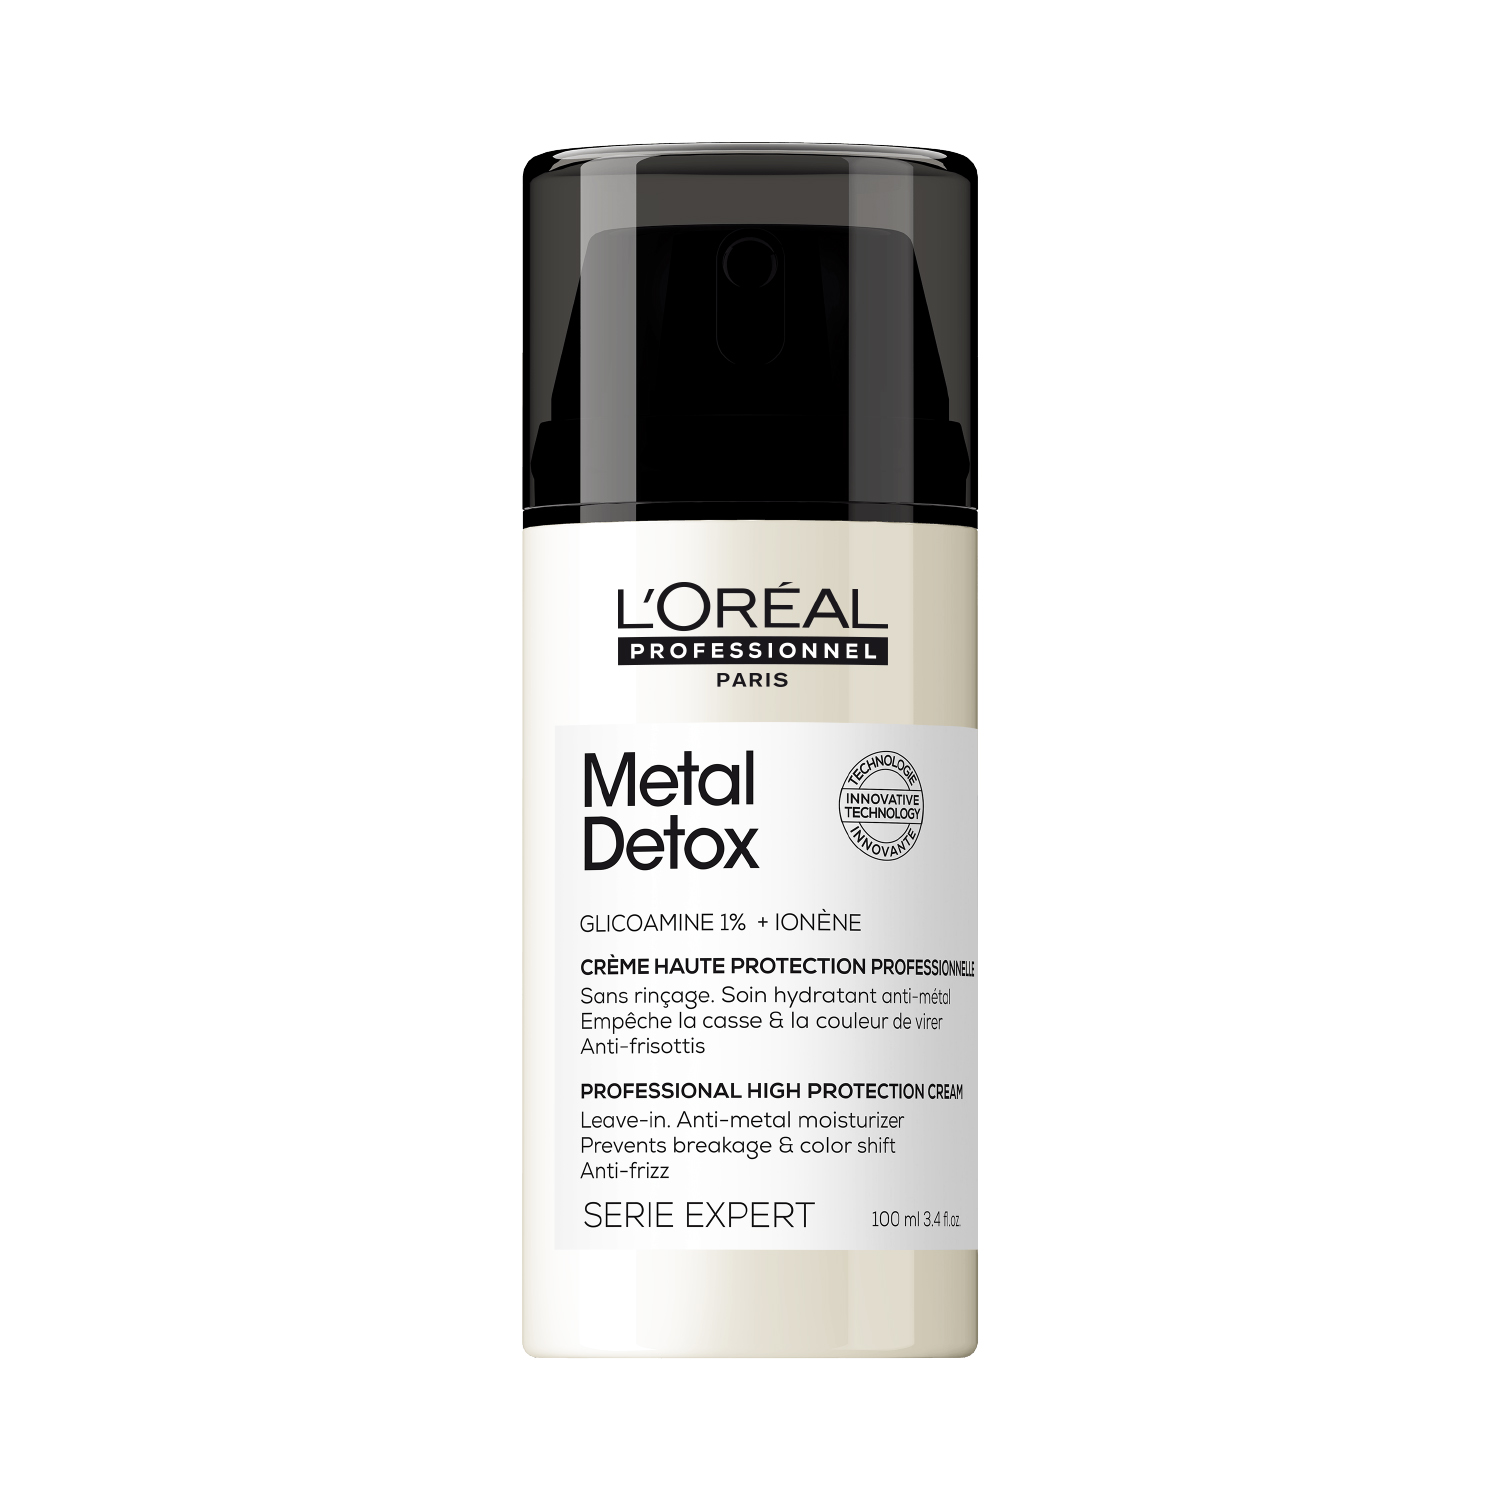 metal detox leave-in (crema de alta protección anti-metales)